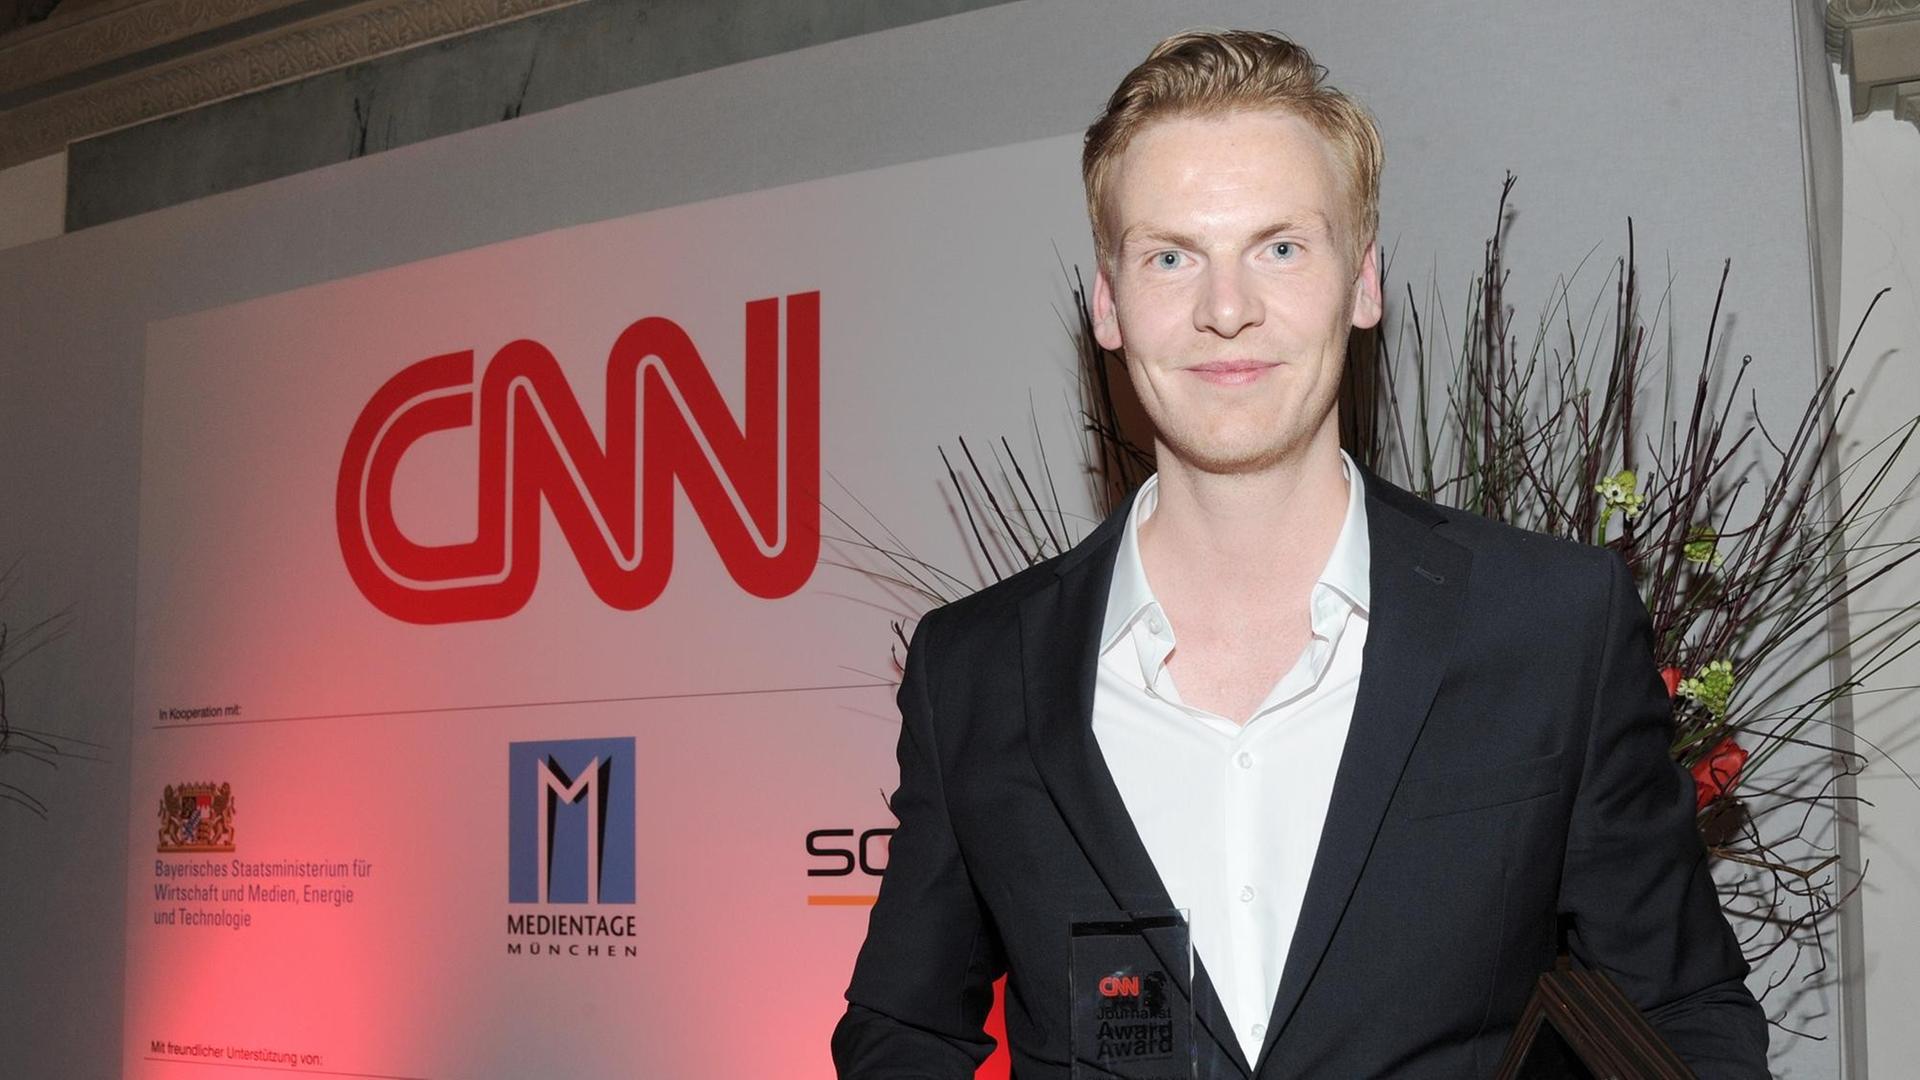 Der Journalist Claas Relotius präsentiert 2014 auf einer Gala in München seine Auszeichnung zum "CNN Journalist Of The Year".